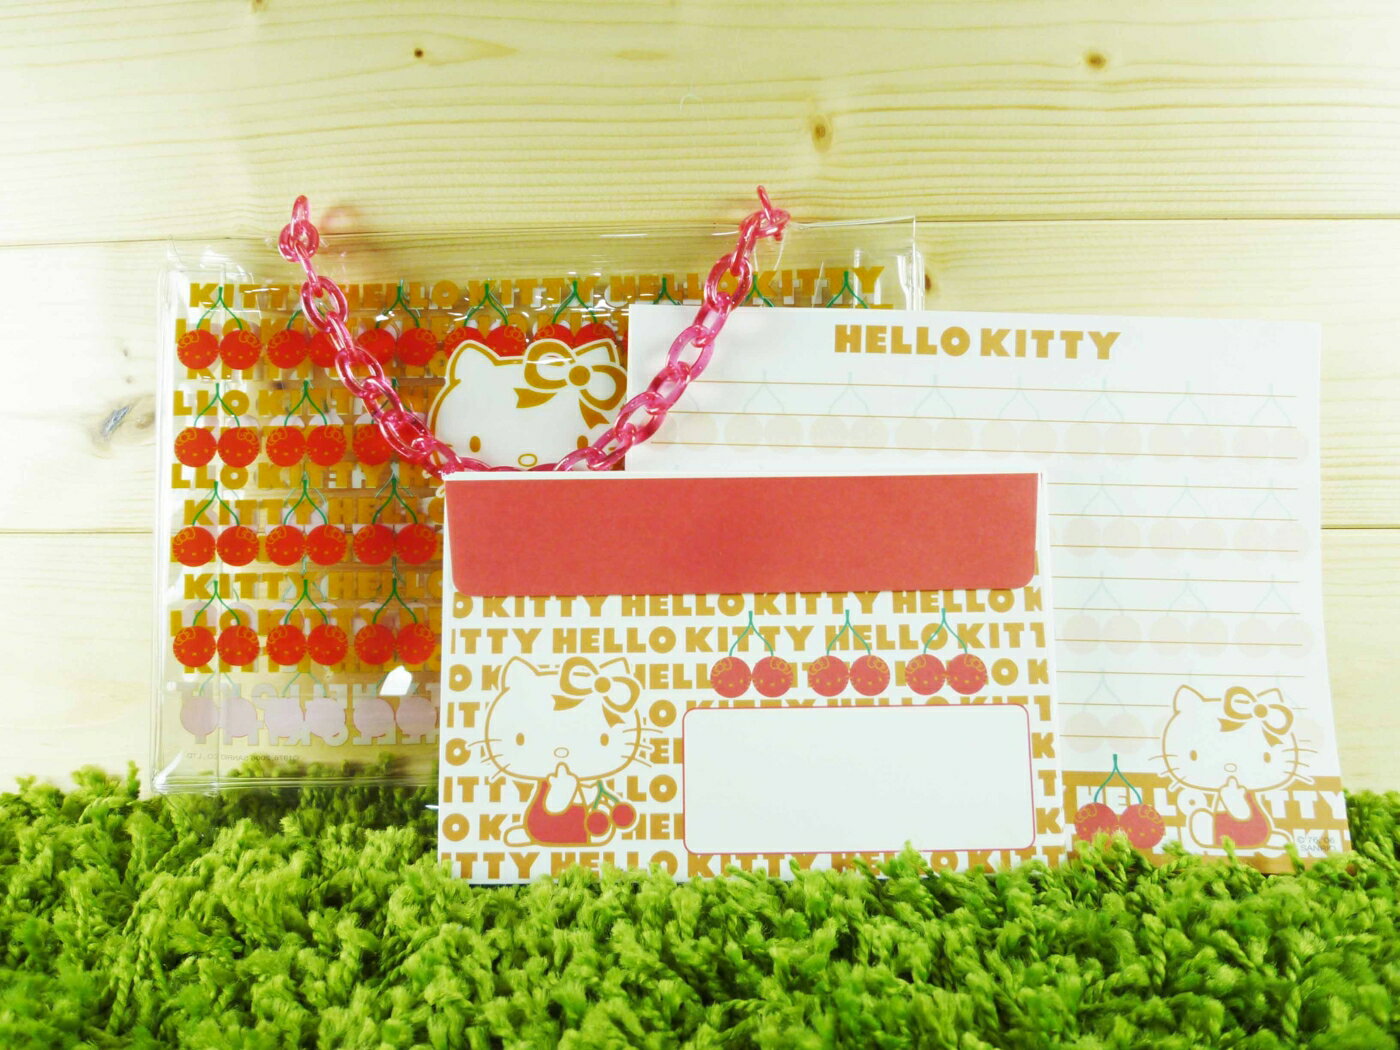 【震撼精品百貨】Hello Kitty 凱蒂貓 信籤組附袋 紅櫻桃【共1款】 震撼日式精品百貨